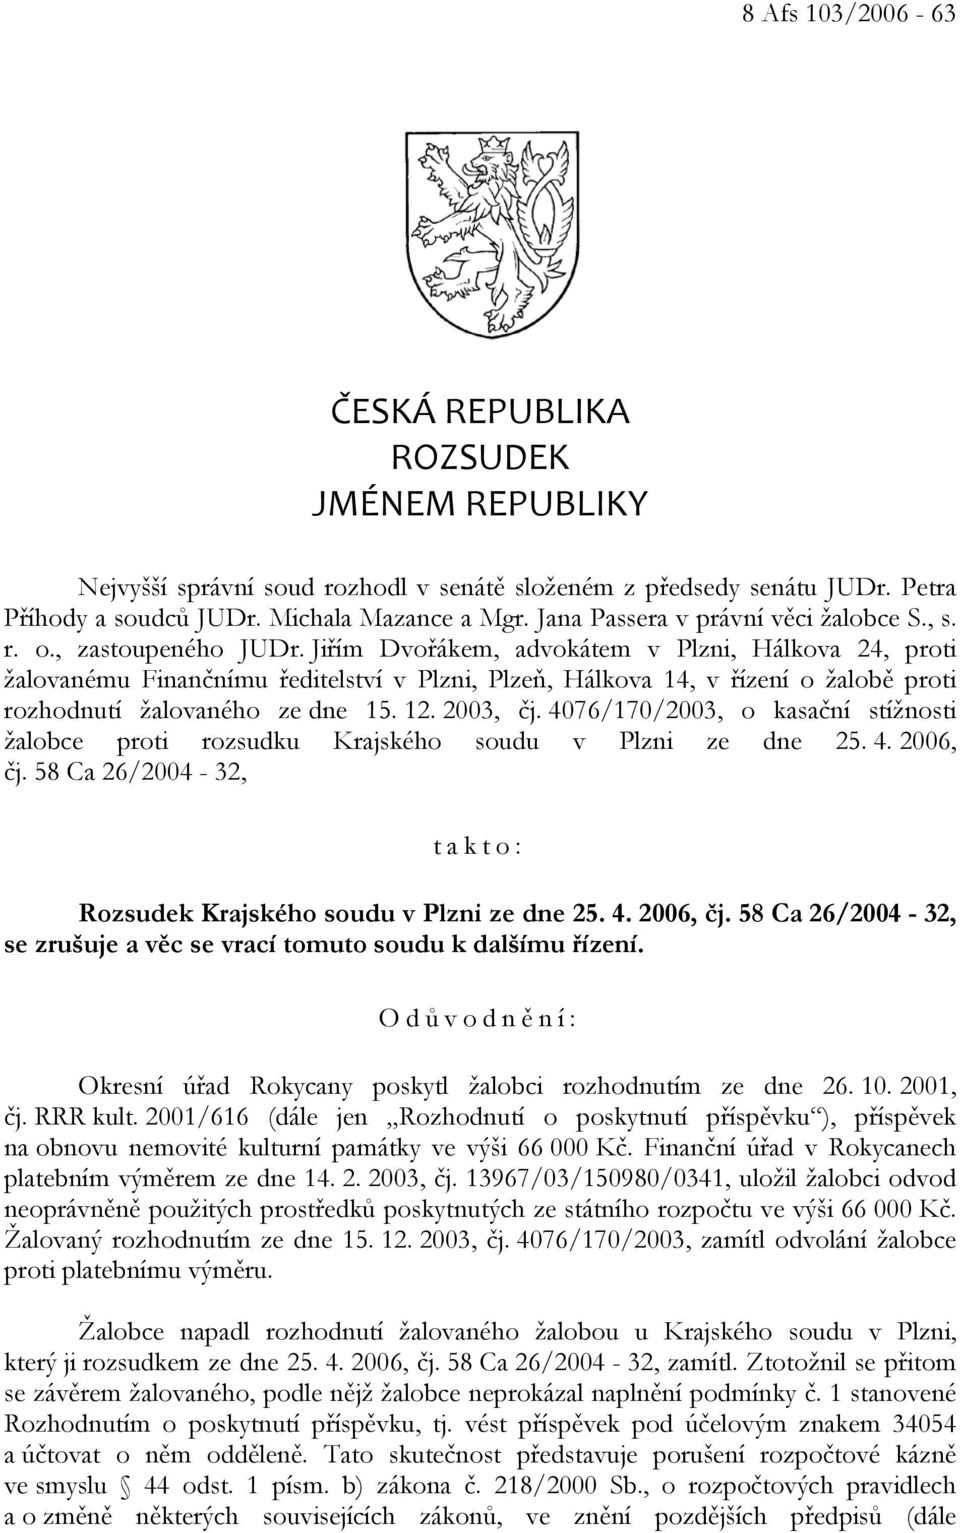 Jiřím Dvořákem, advokátem v Plzni, Hálkova 24, proti žalovanému Finančnímu ředitelství v Plzni, Plzeň, Hálkova 14, v řízení o žalobě proti rozhodnutí žalovaného ze dne 15. 12. 2003, čj.